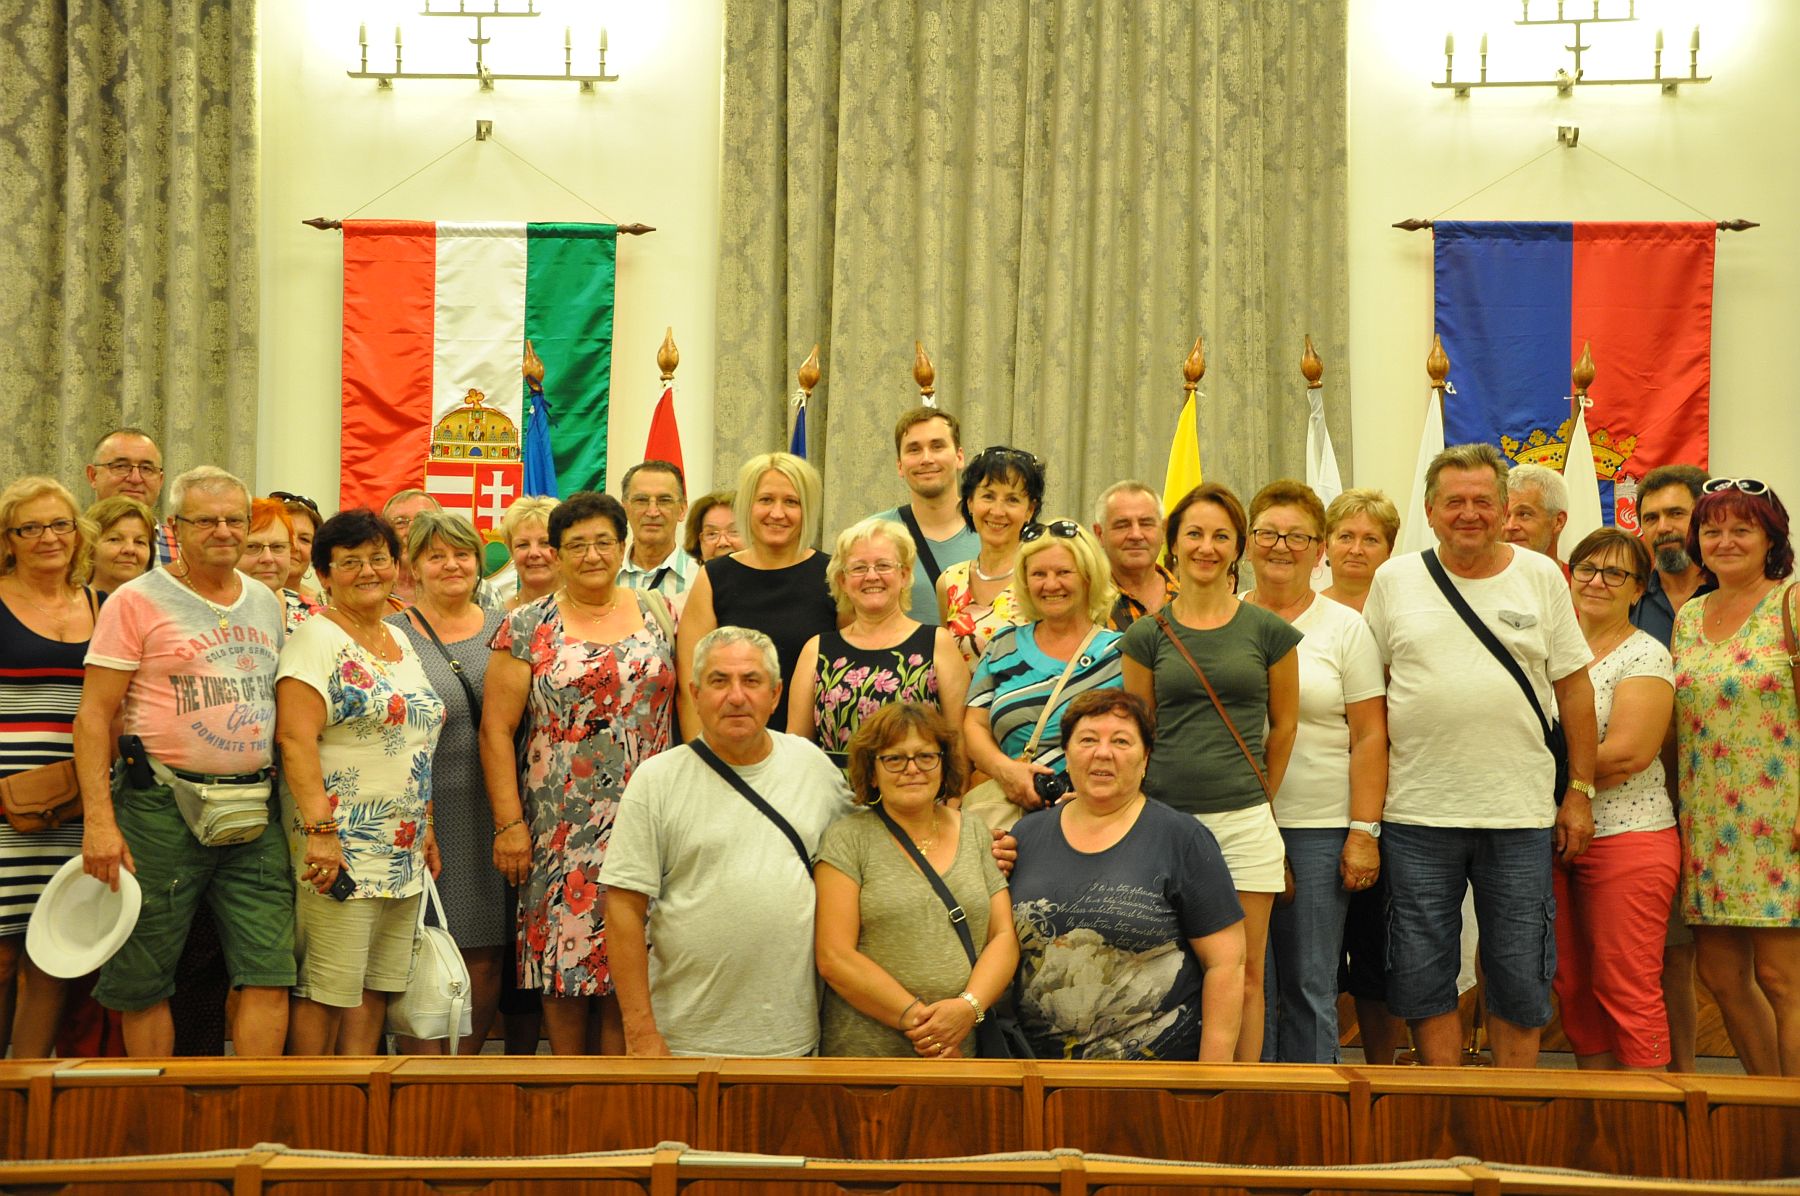 A felvidéki Rozsnyóról érkezett vendégek látogattak a Városházára